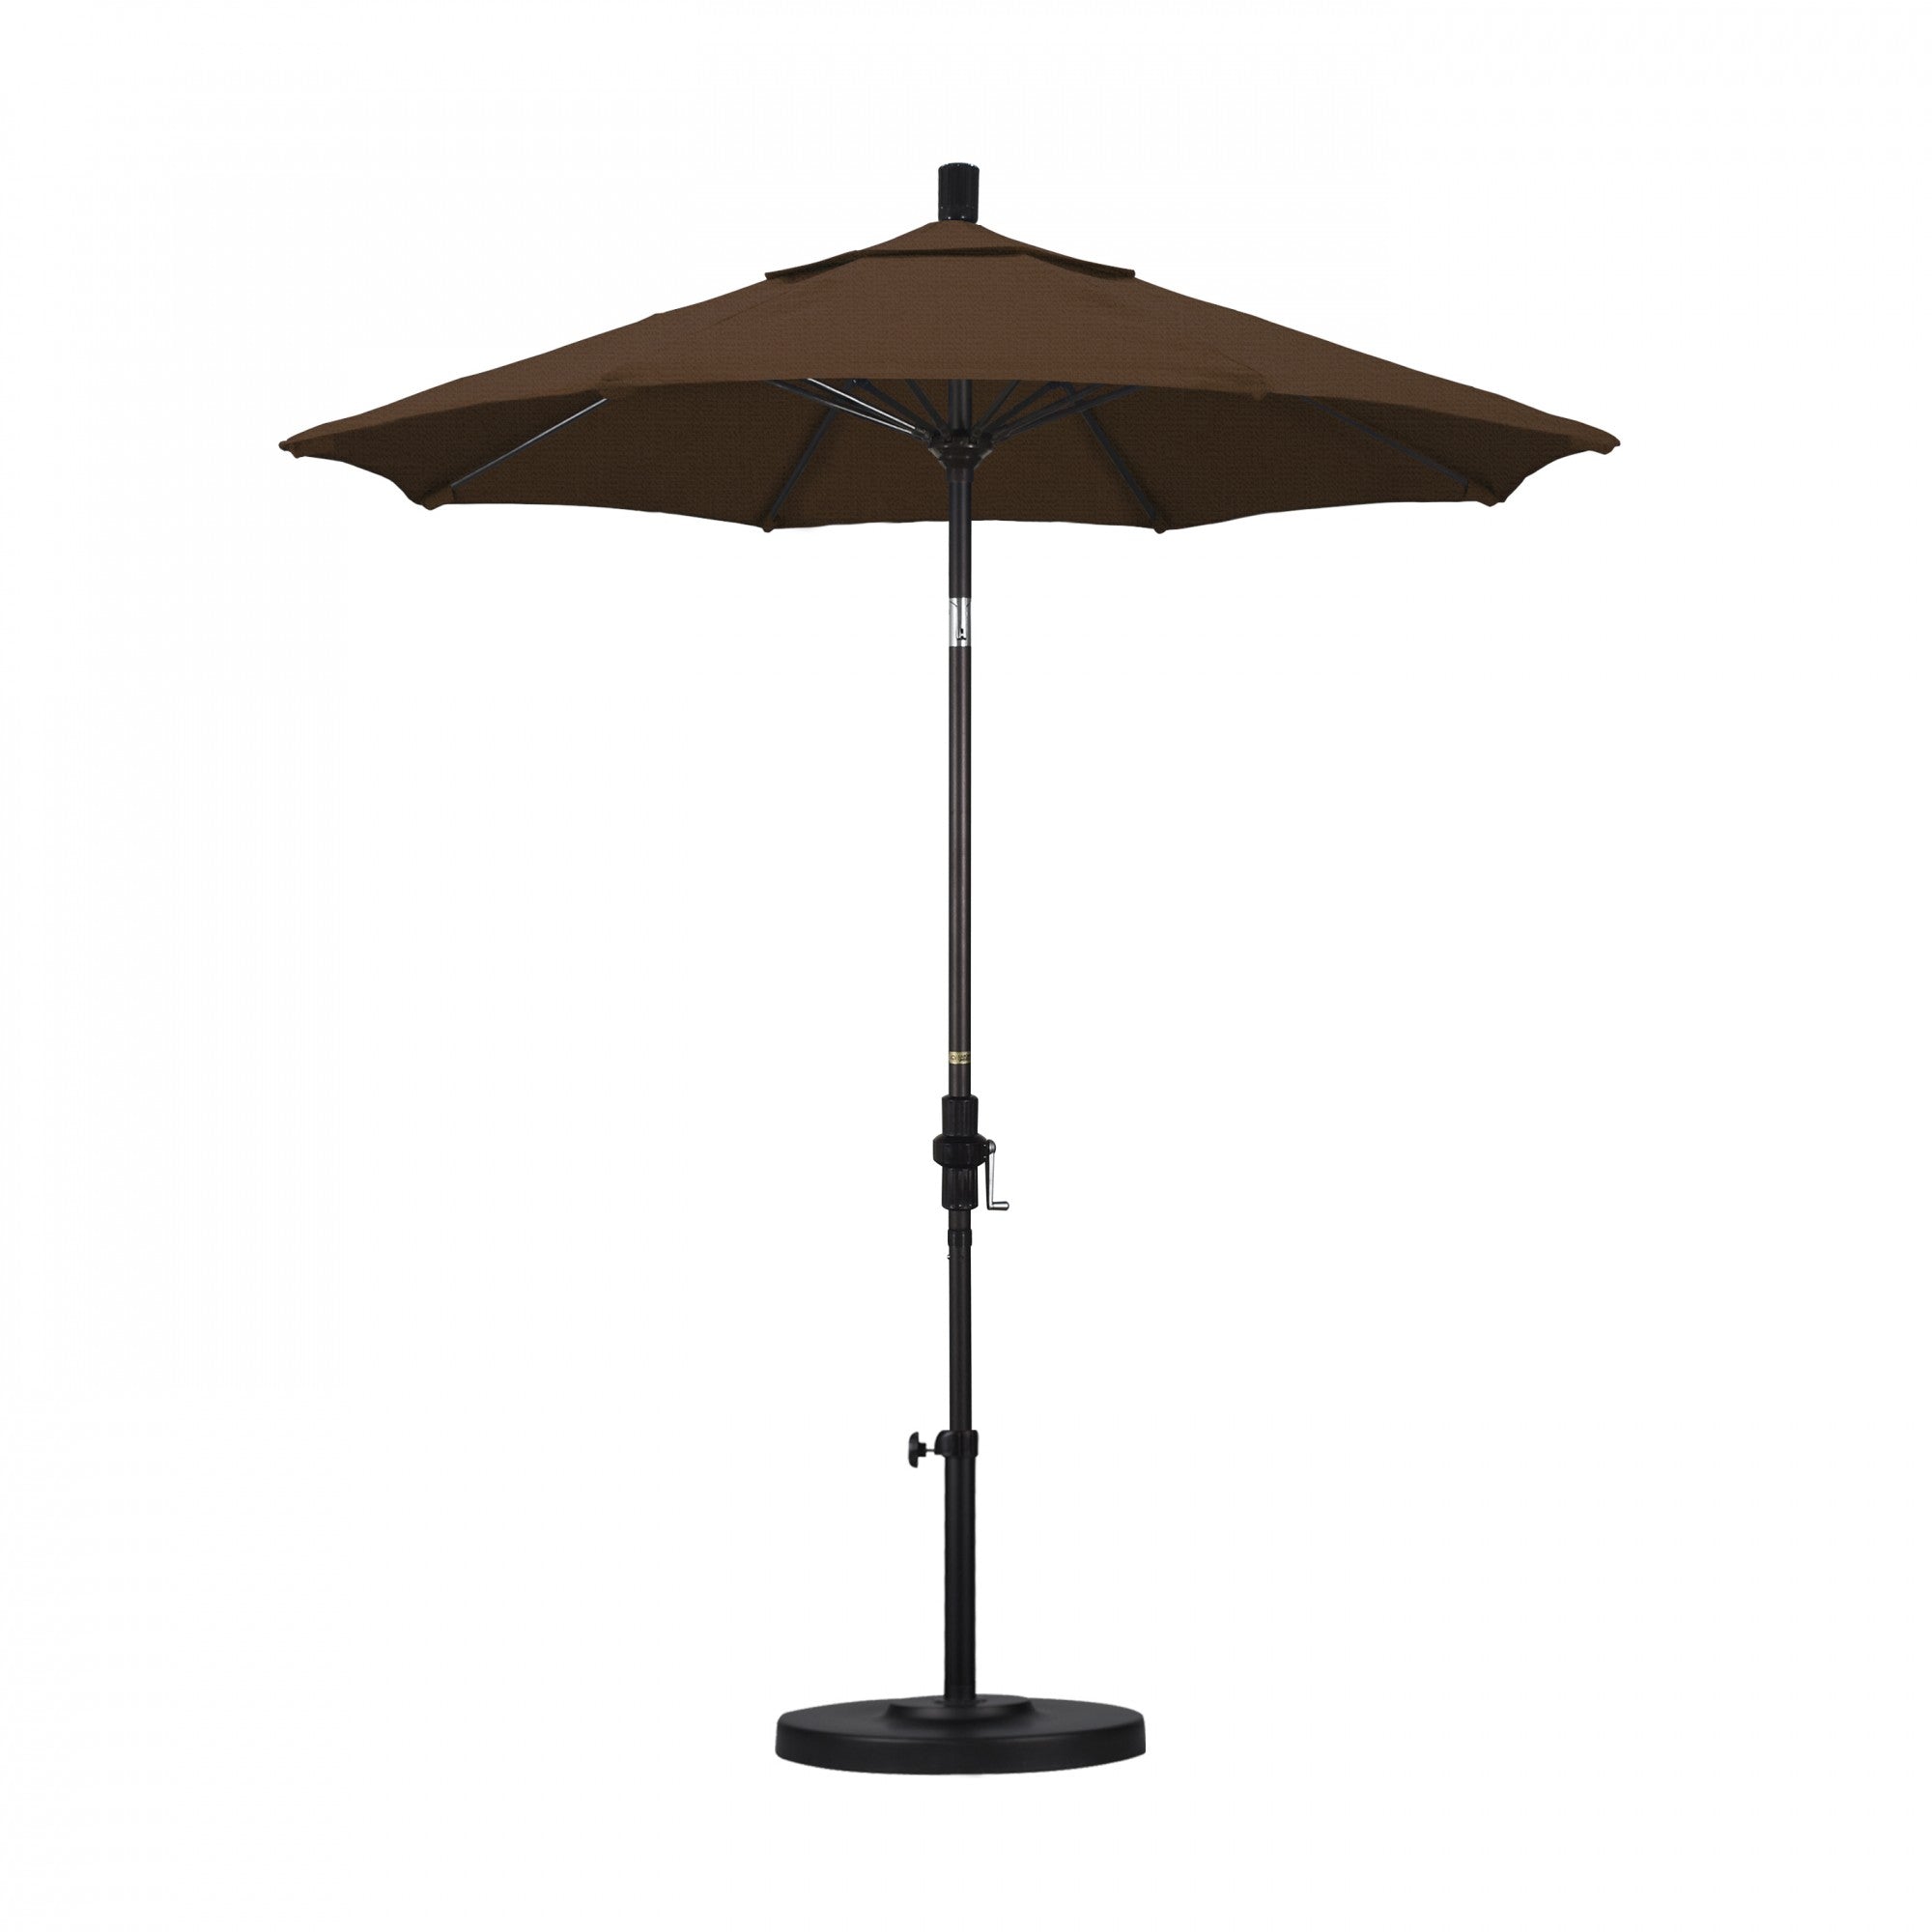 California Umbrella - 7.5' - Patio Umbrella Umbrella - Aluminum Pole - Teak - Olefin - GSCUF758117-F71